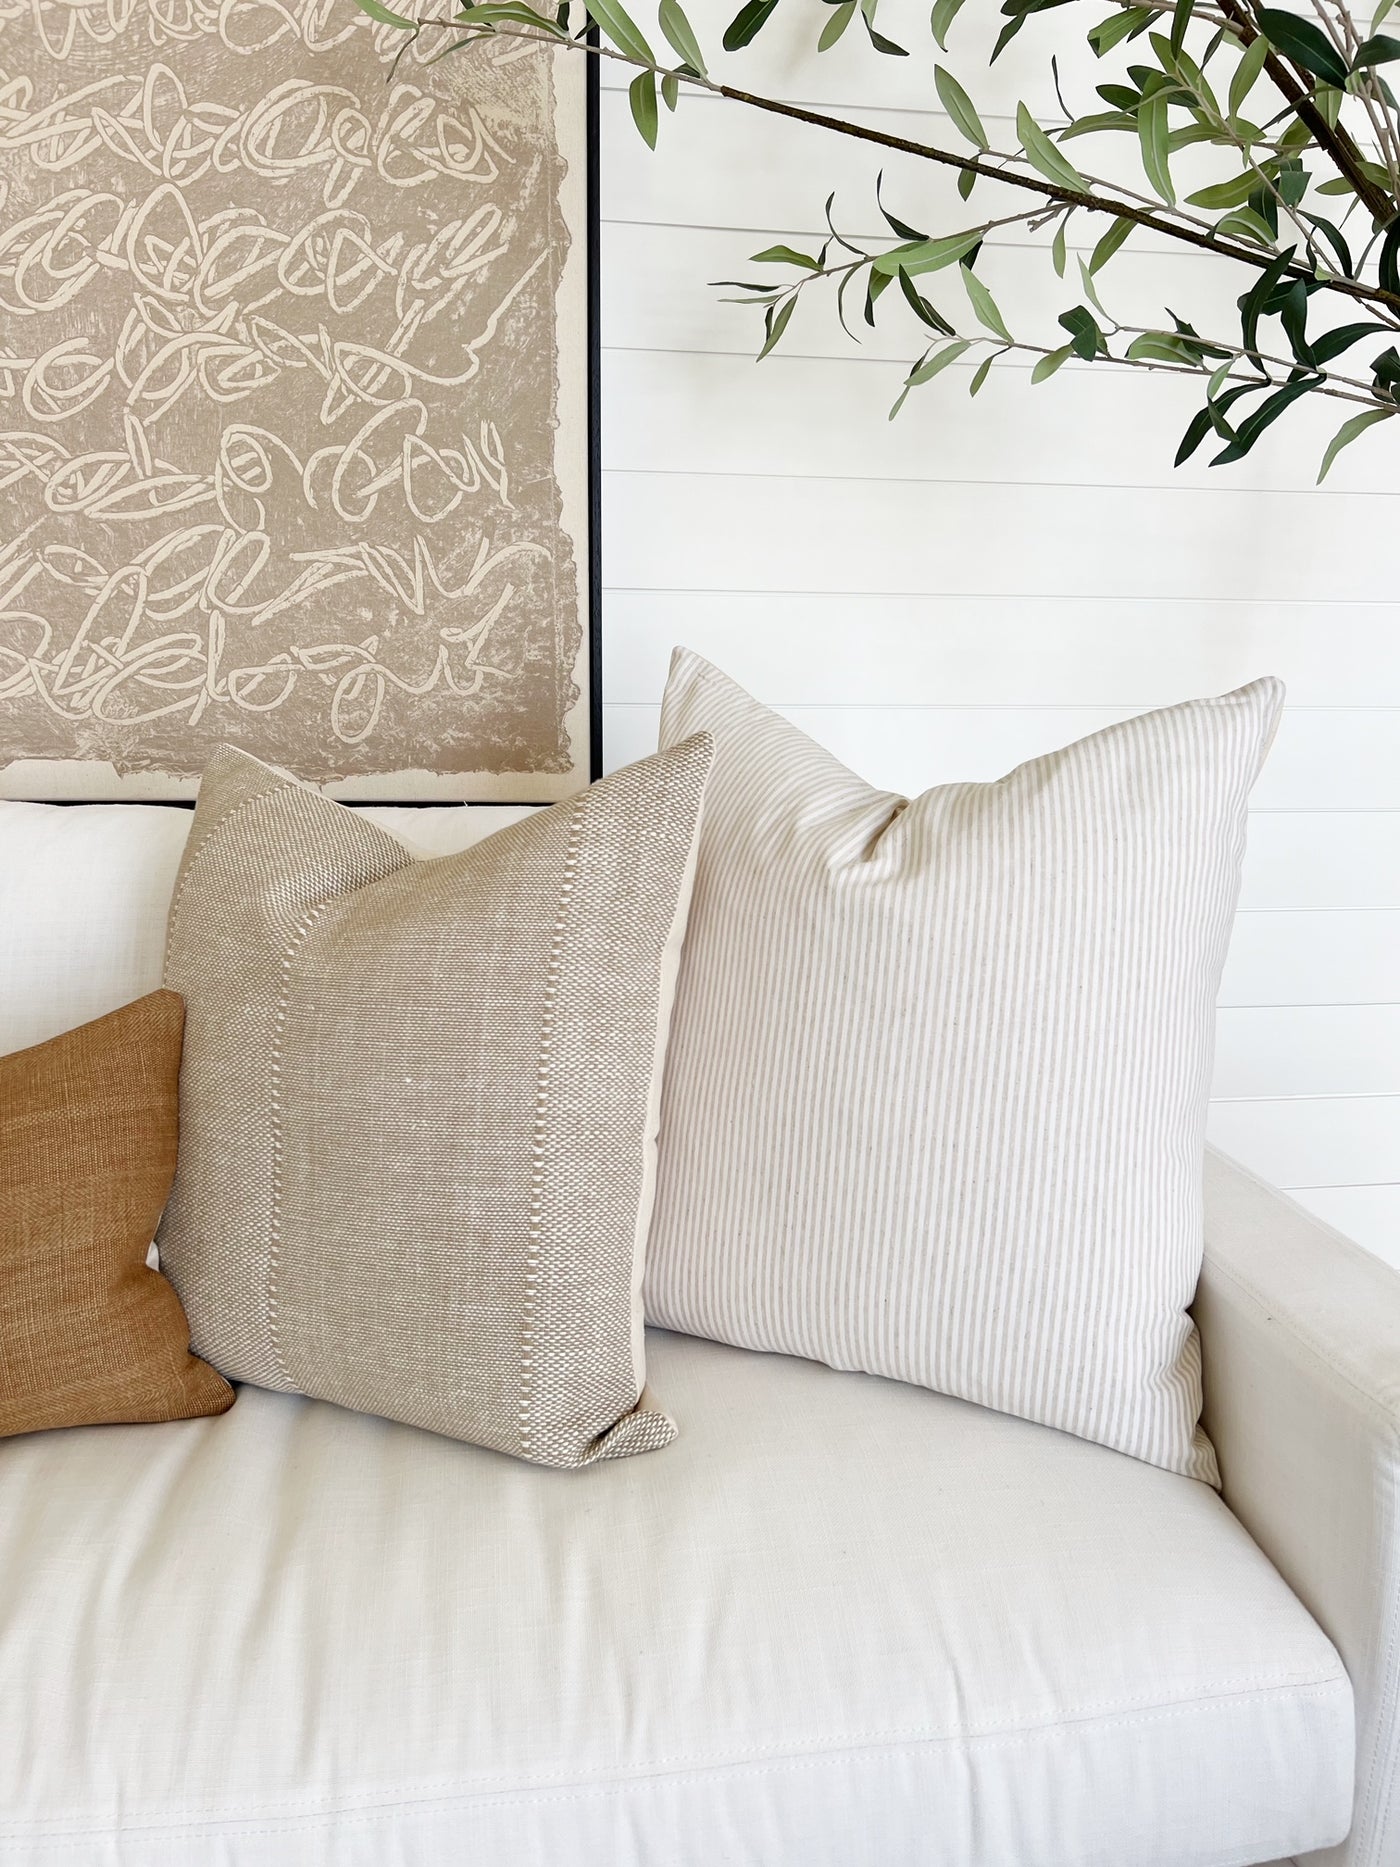 Throw Pillows, Set3 Pillows, Pillows Combo, Black and Neutral Sofa Pillow  Combination, Boho Textured Pillows, Farmhouse Pillows 